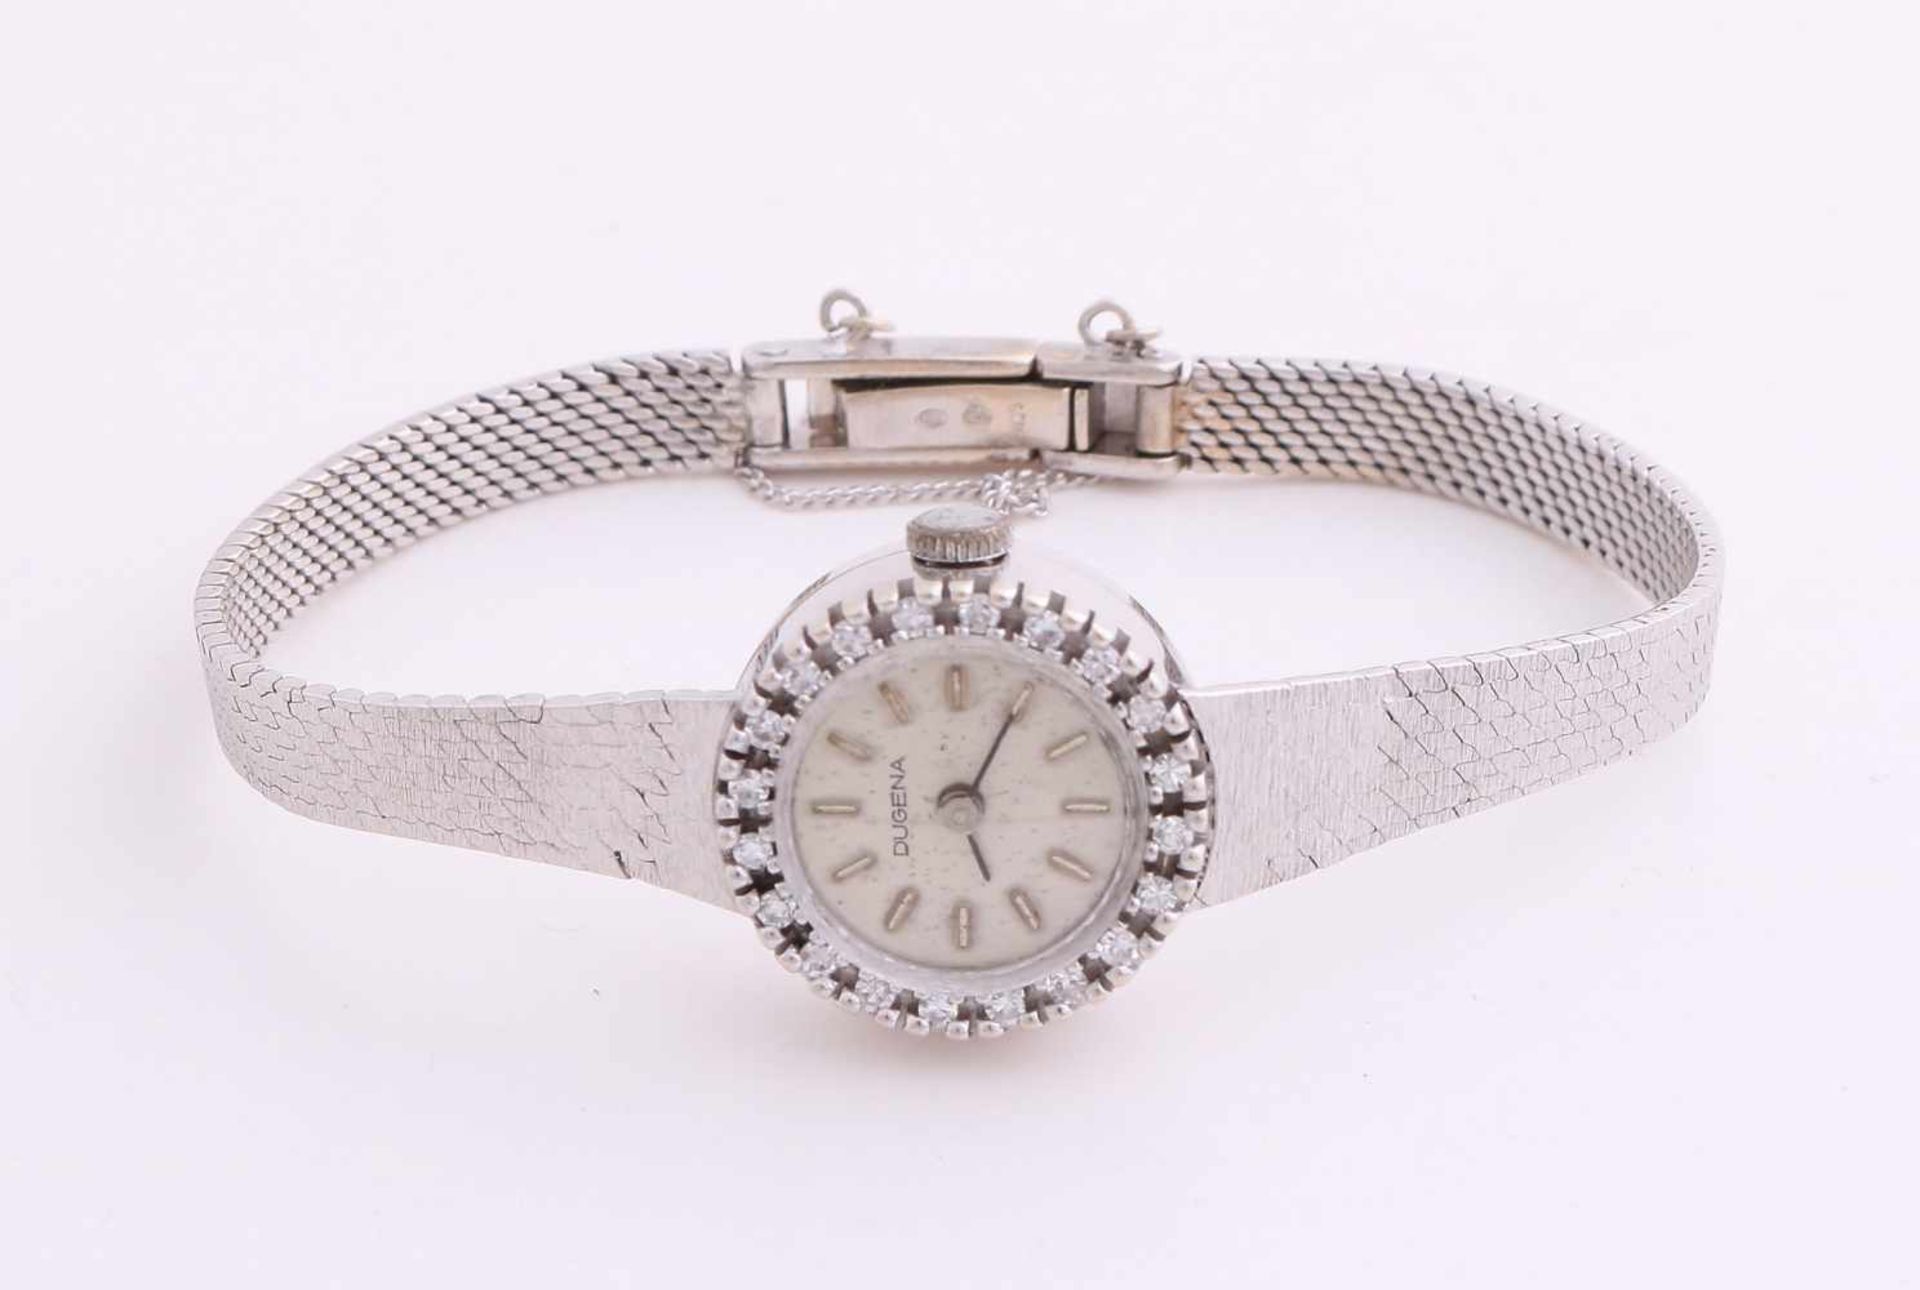 Weißgold Damenuhr, 585/000, Marke Dugena, mit Diamant. Uhr mit rundem Gehäuse, ø18 mm, besetzt mit